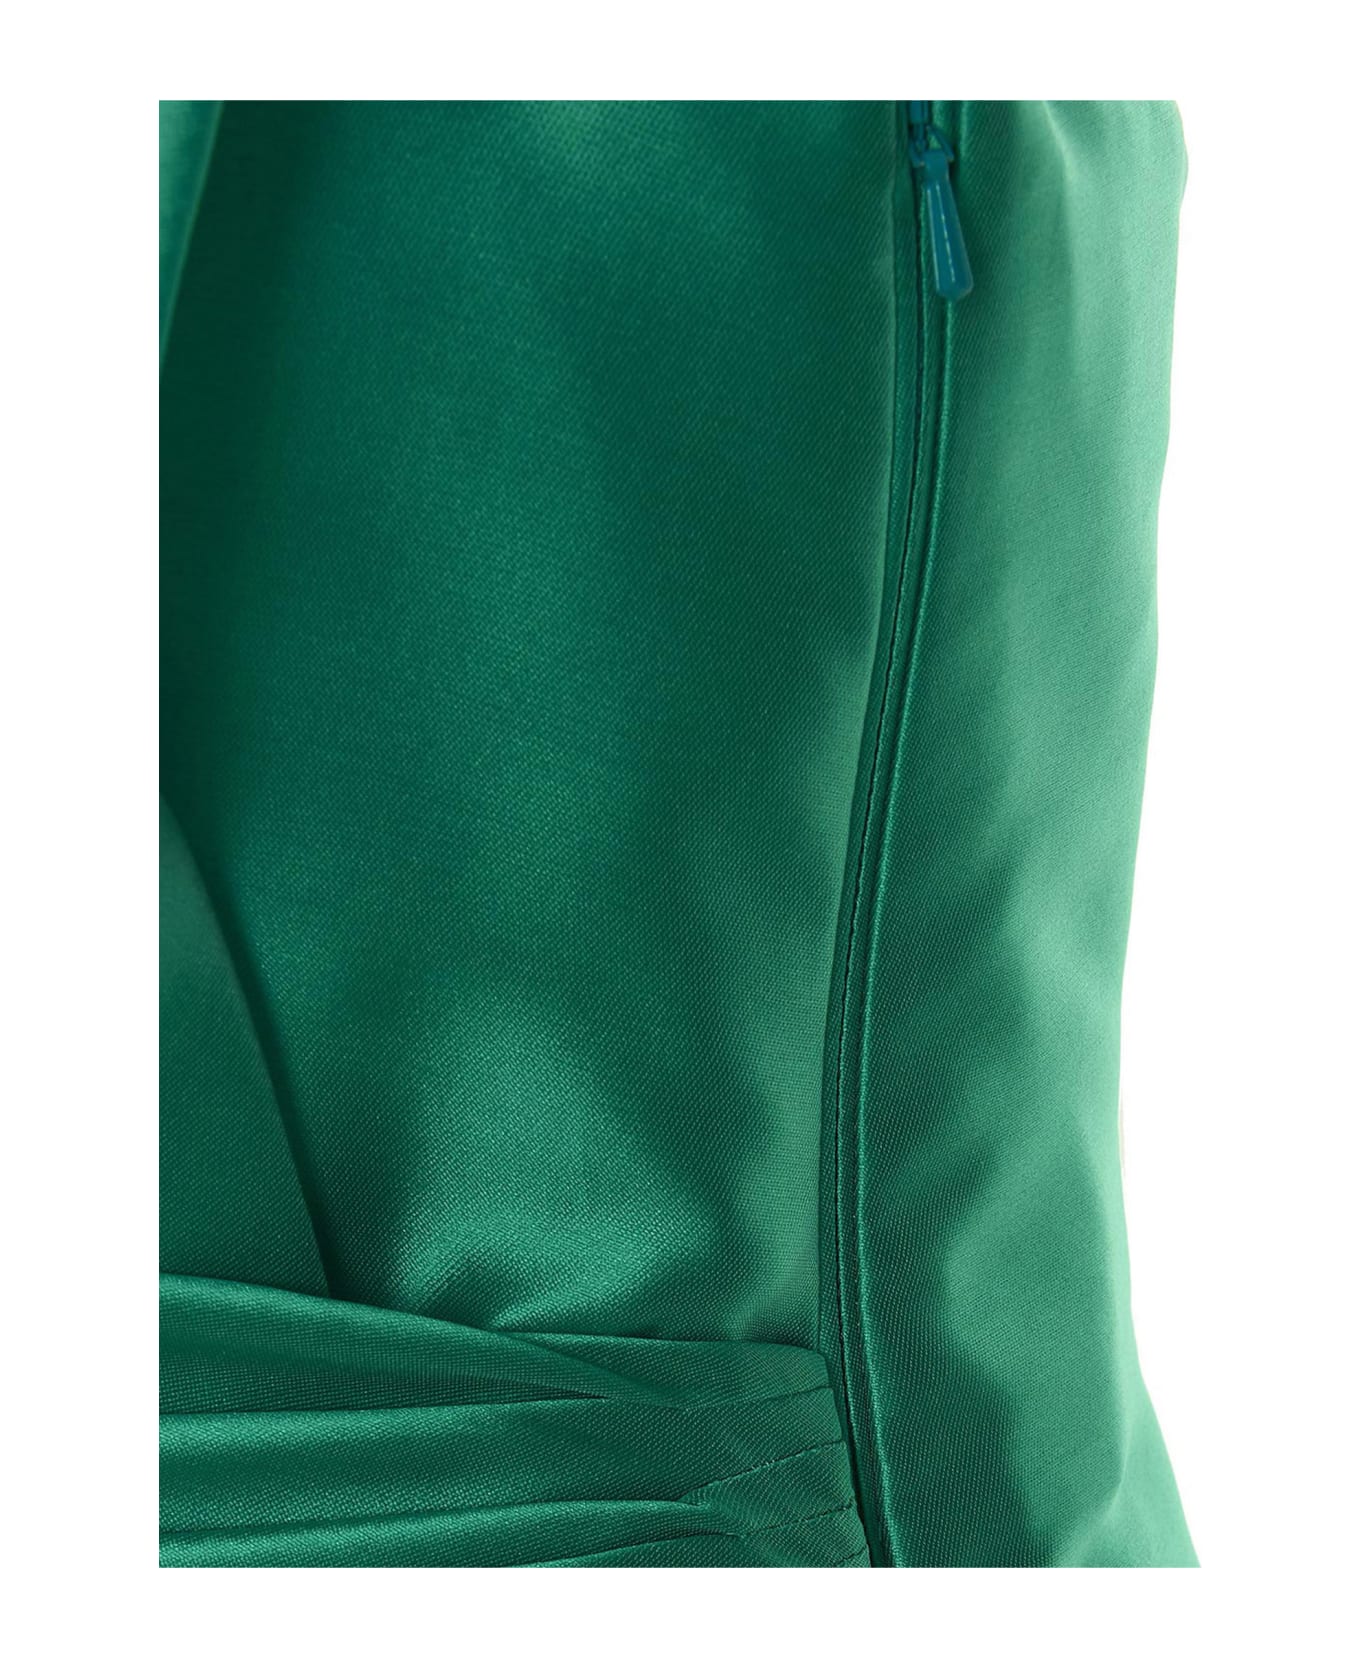 Alberta Ferretti Mikado Maxi Dress - Green